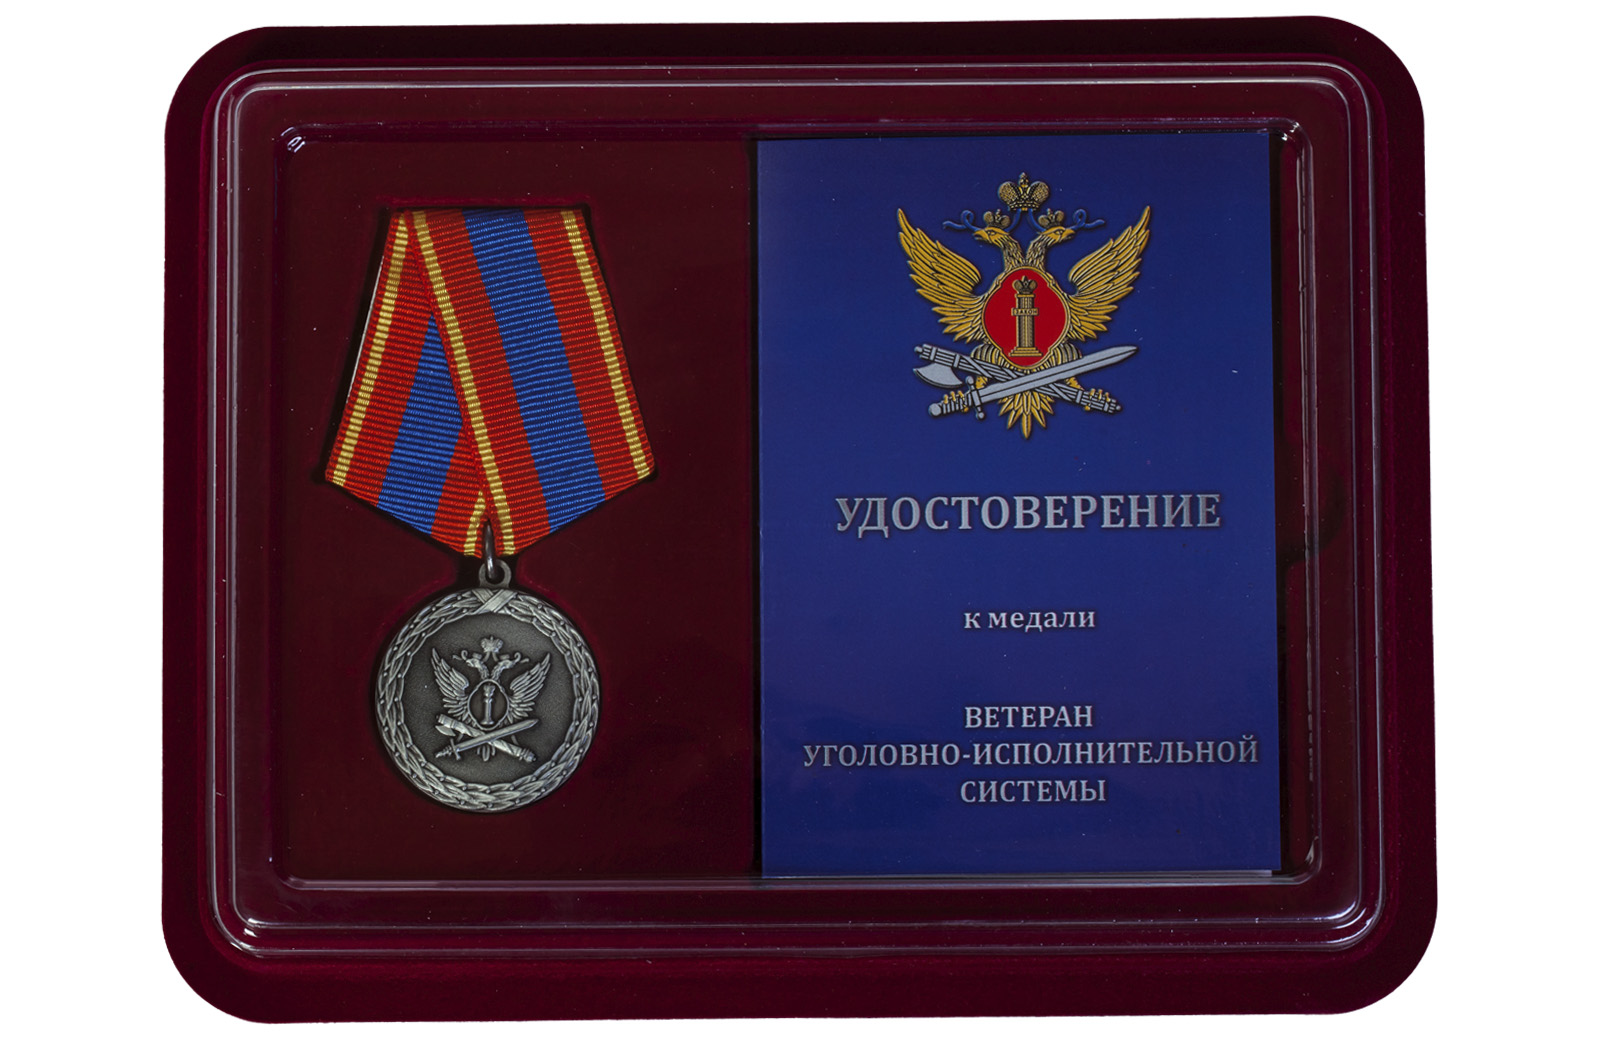 Купить медаль Ветеран уголовно-исполнительной системы оптом или в розницу